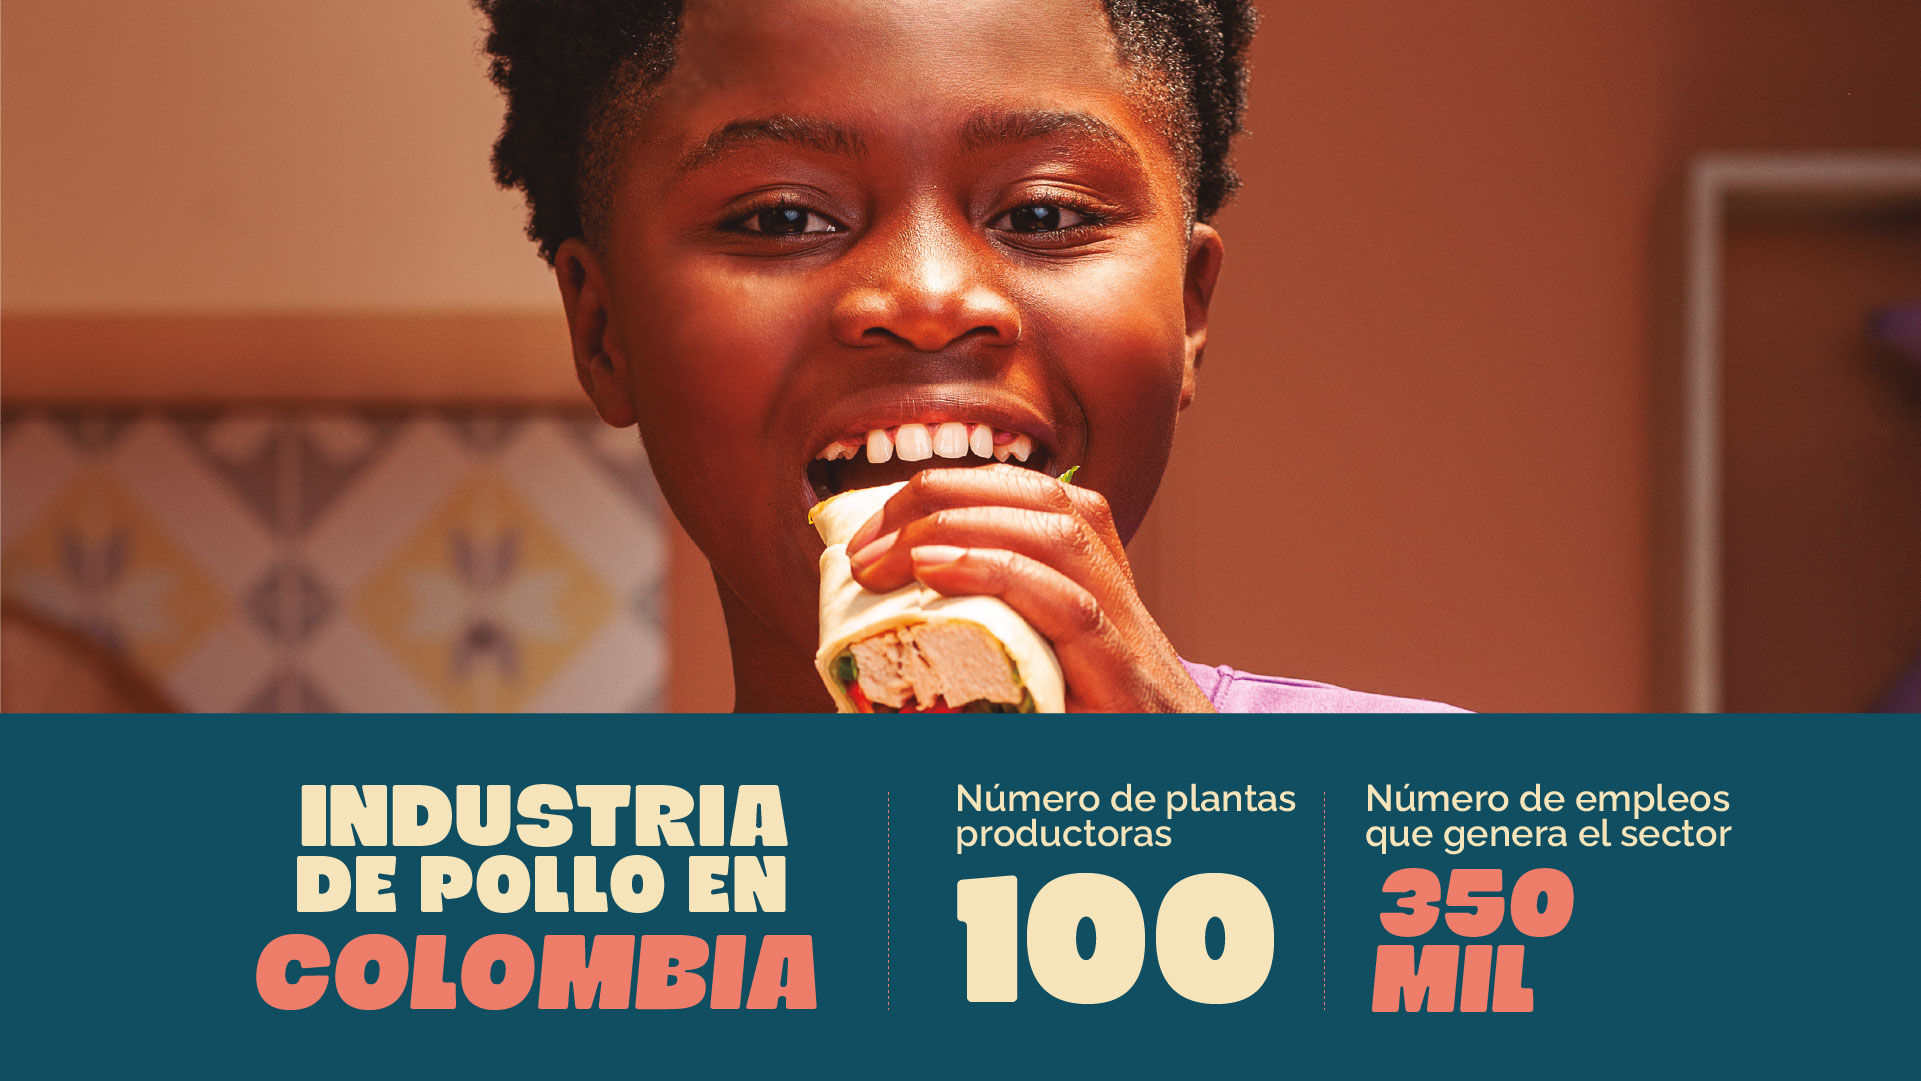 Industria de pollo en Colombia. Número de plantas productoras 100. Número de empleos que genera el sector 350 mil